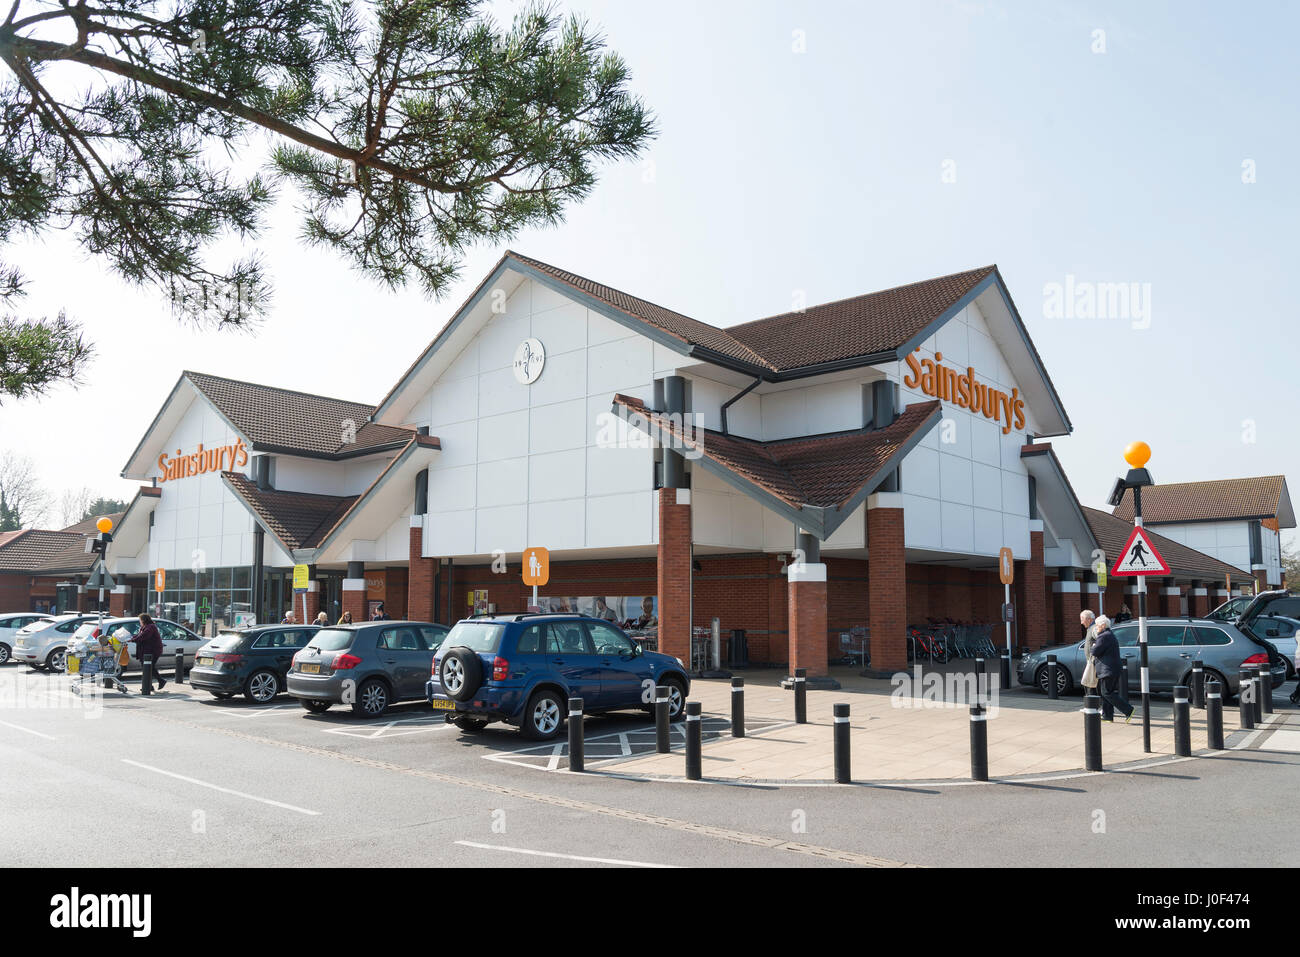 Sainsbury's Winnersh Superstore, King Street Lane, Winnersh, Berkshire, England, United Kingdom Stock Photo